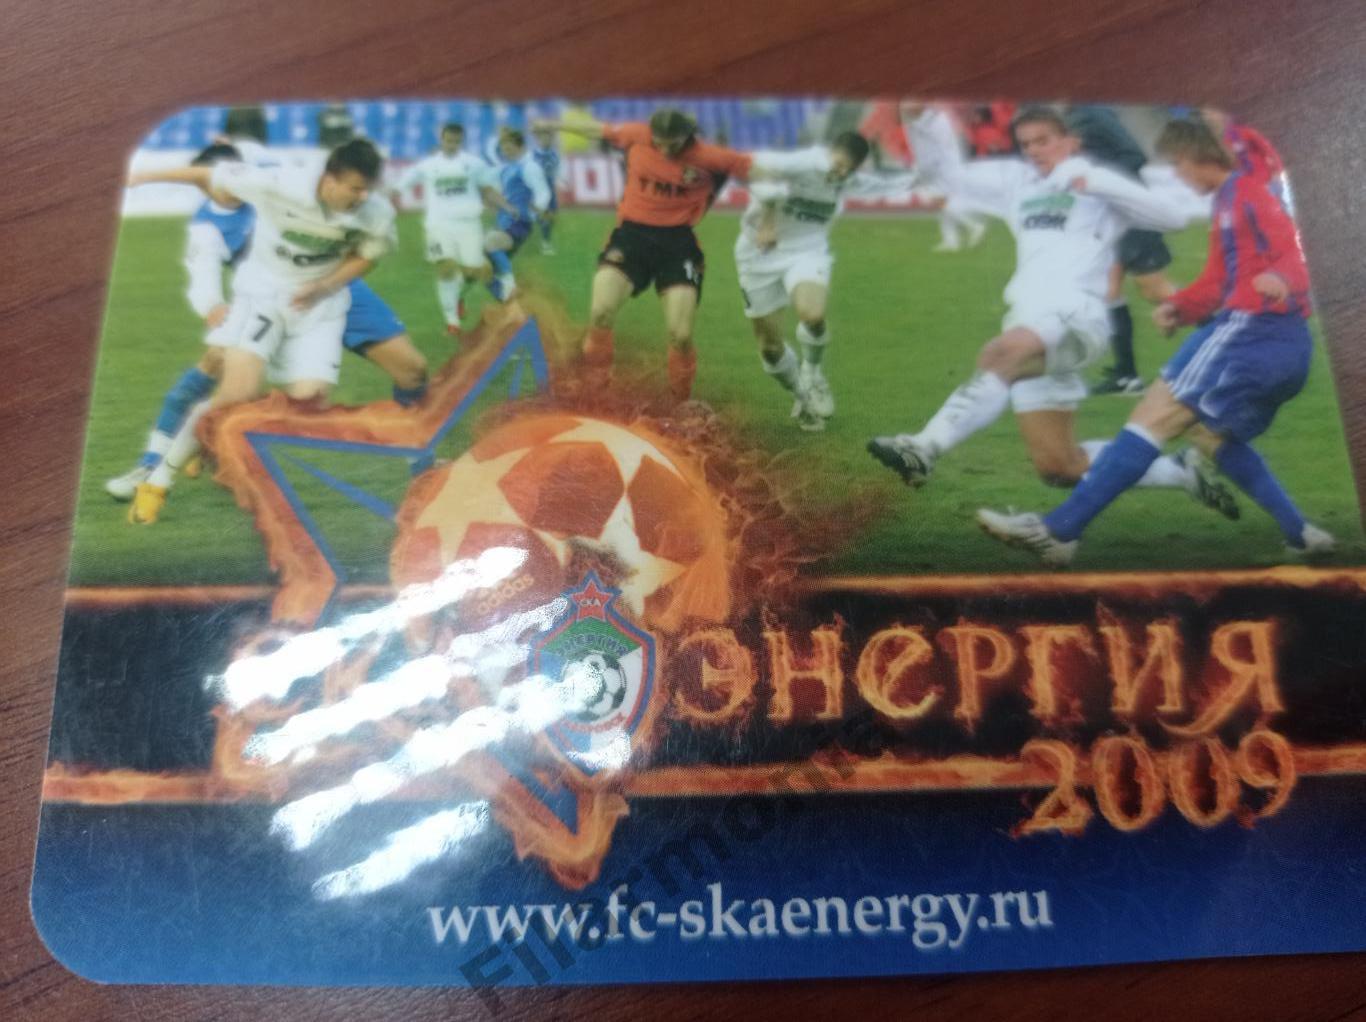 2009 СКА-Энергия Хабаровск календарь игр